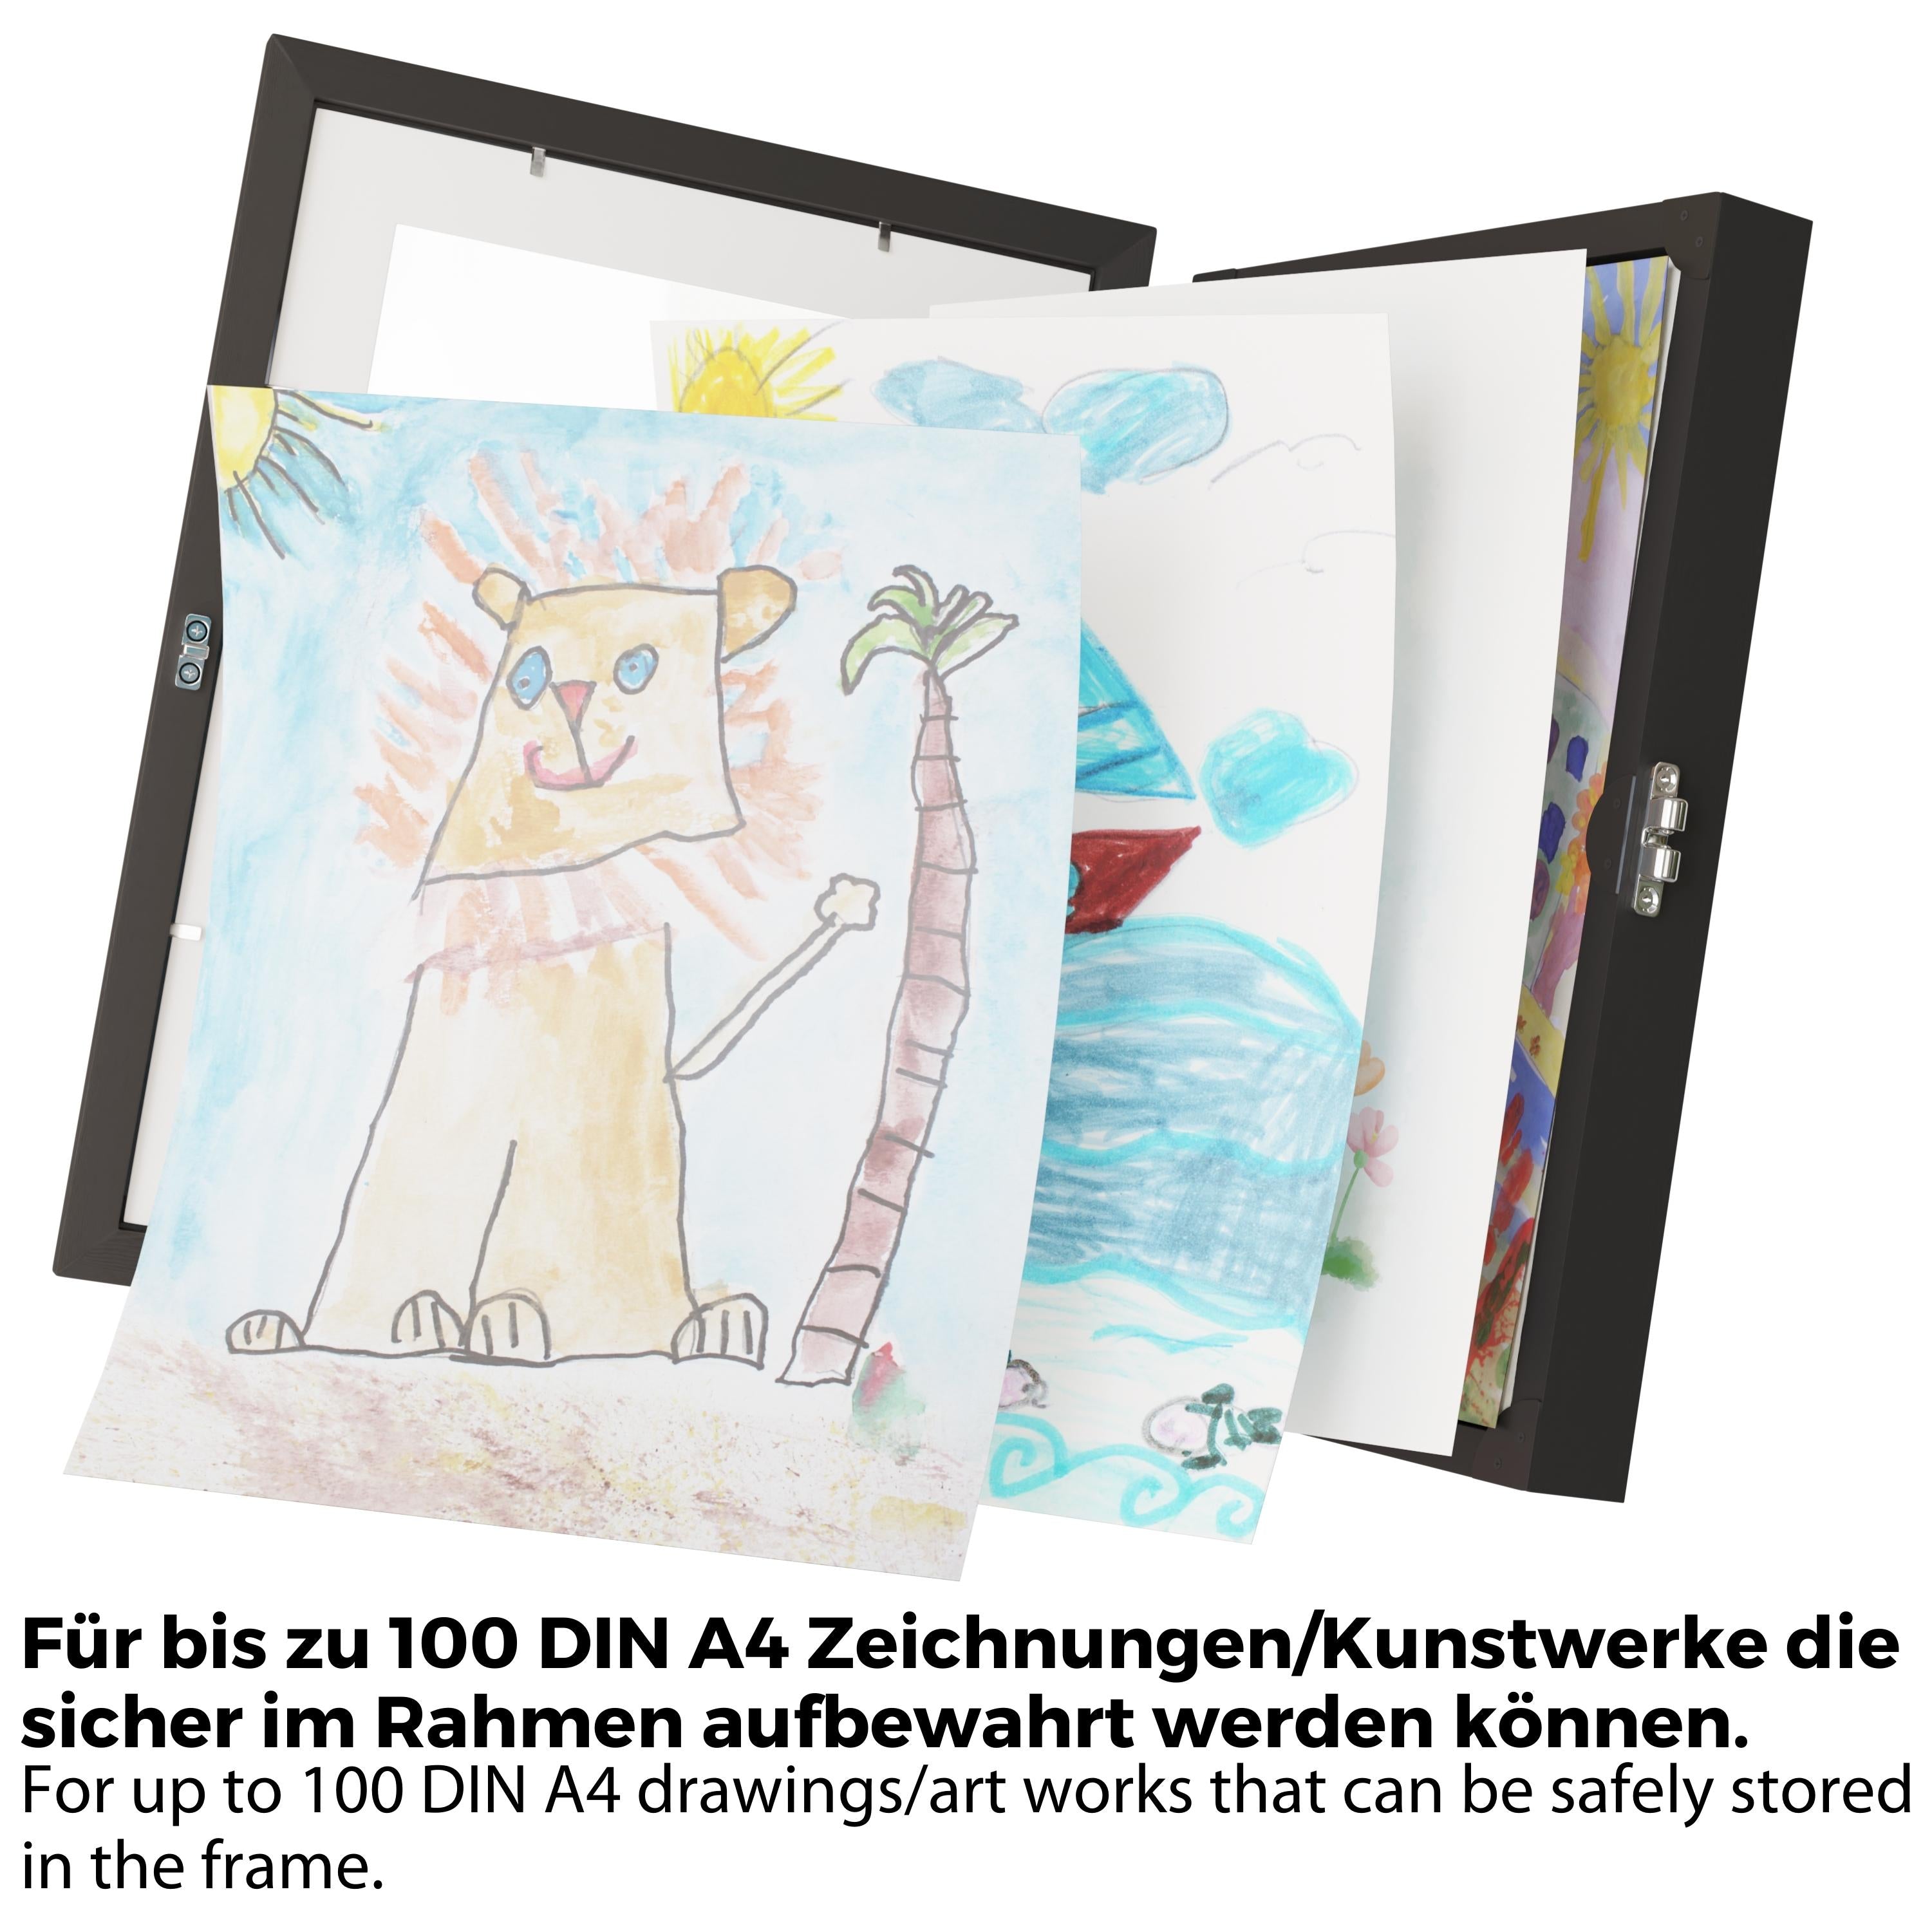 Ankerpunkt Bilderrahmen für Kinderzeichnungen A4 für bis zu 100 Kunstwerke, Zeichnungen